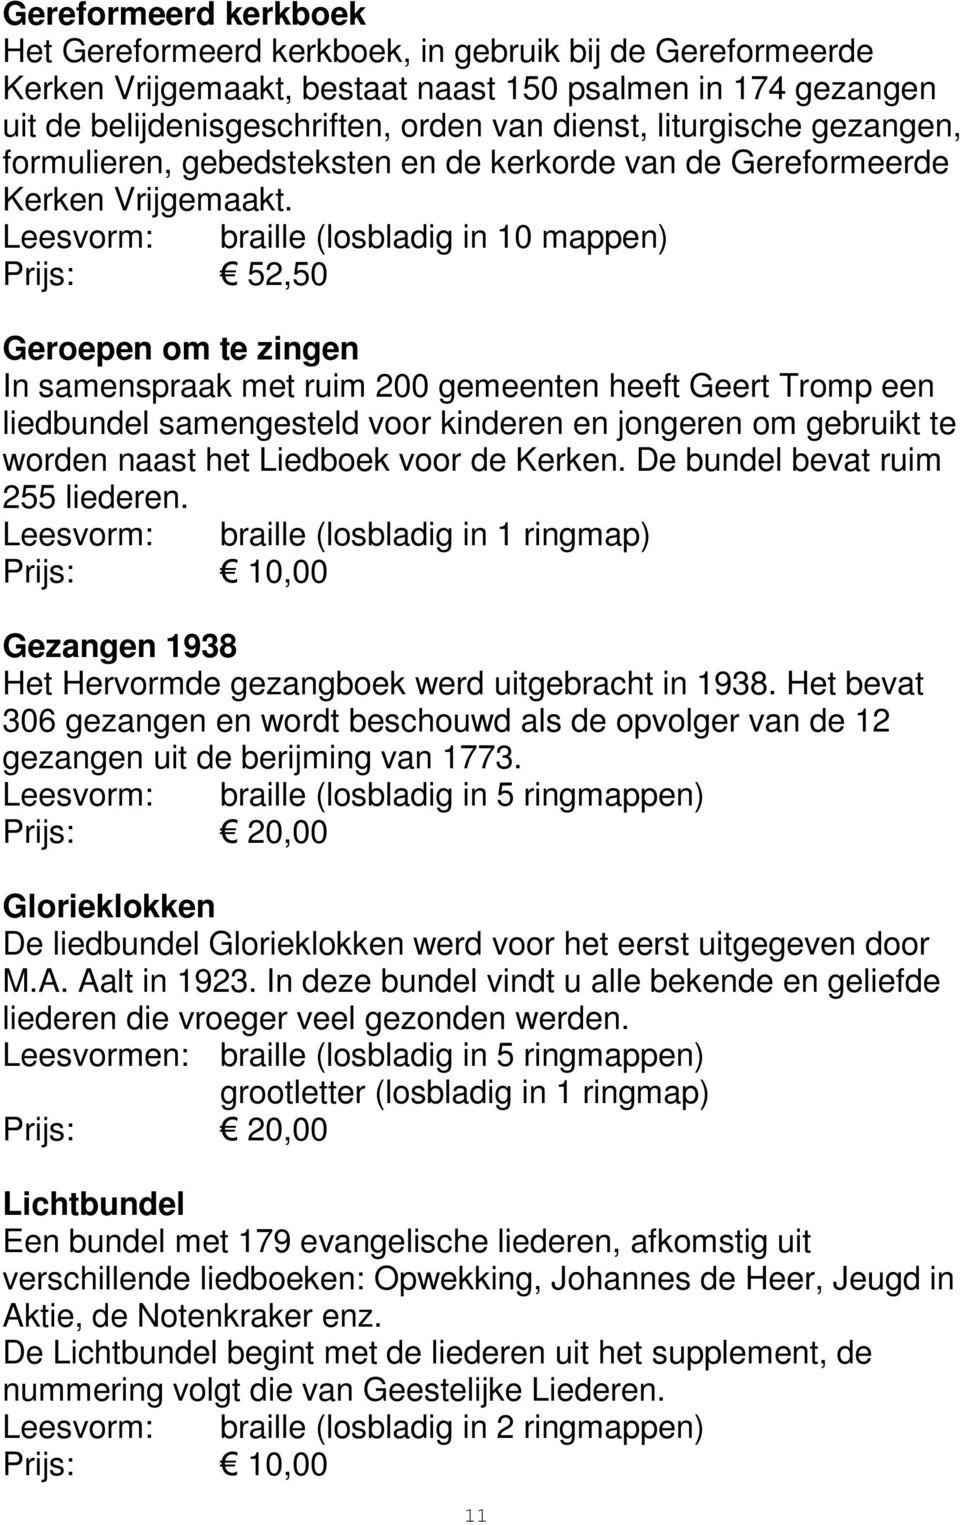 (losbladig in 10 mappen) Prijs: 52,50 Geroepen om te zingen In samenspraak met ruim 200 gemeenten heeft Geert Tromp een liedbundel samengesteld voor kinderen en jongeren om gebruikt te worden naast